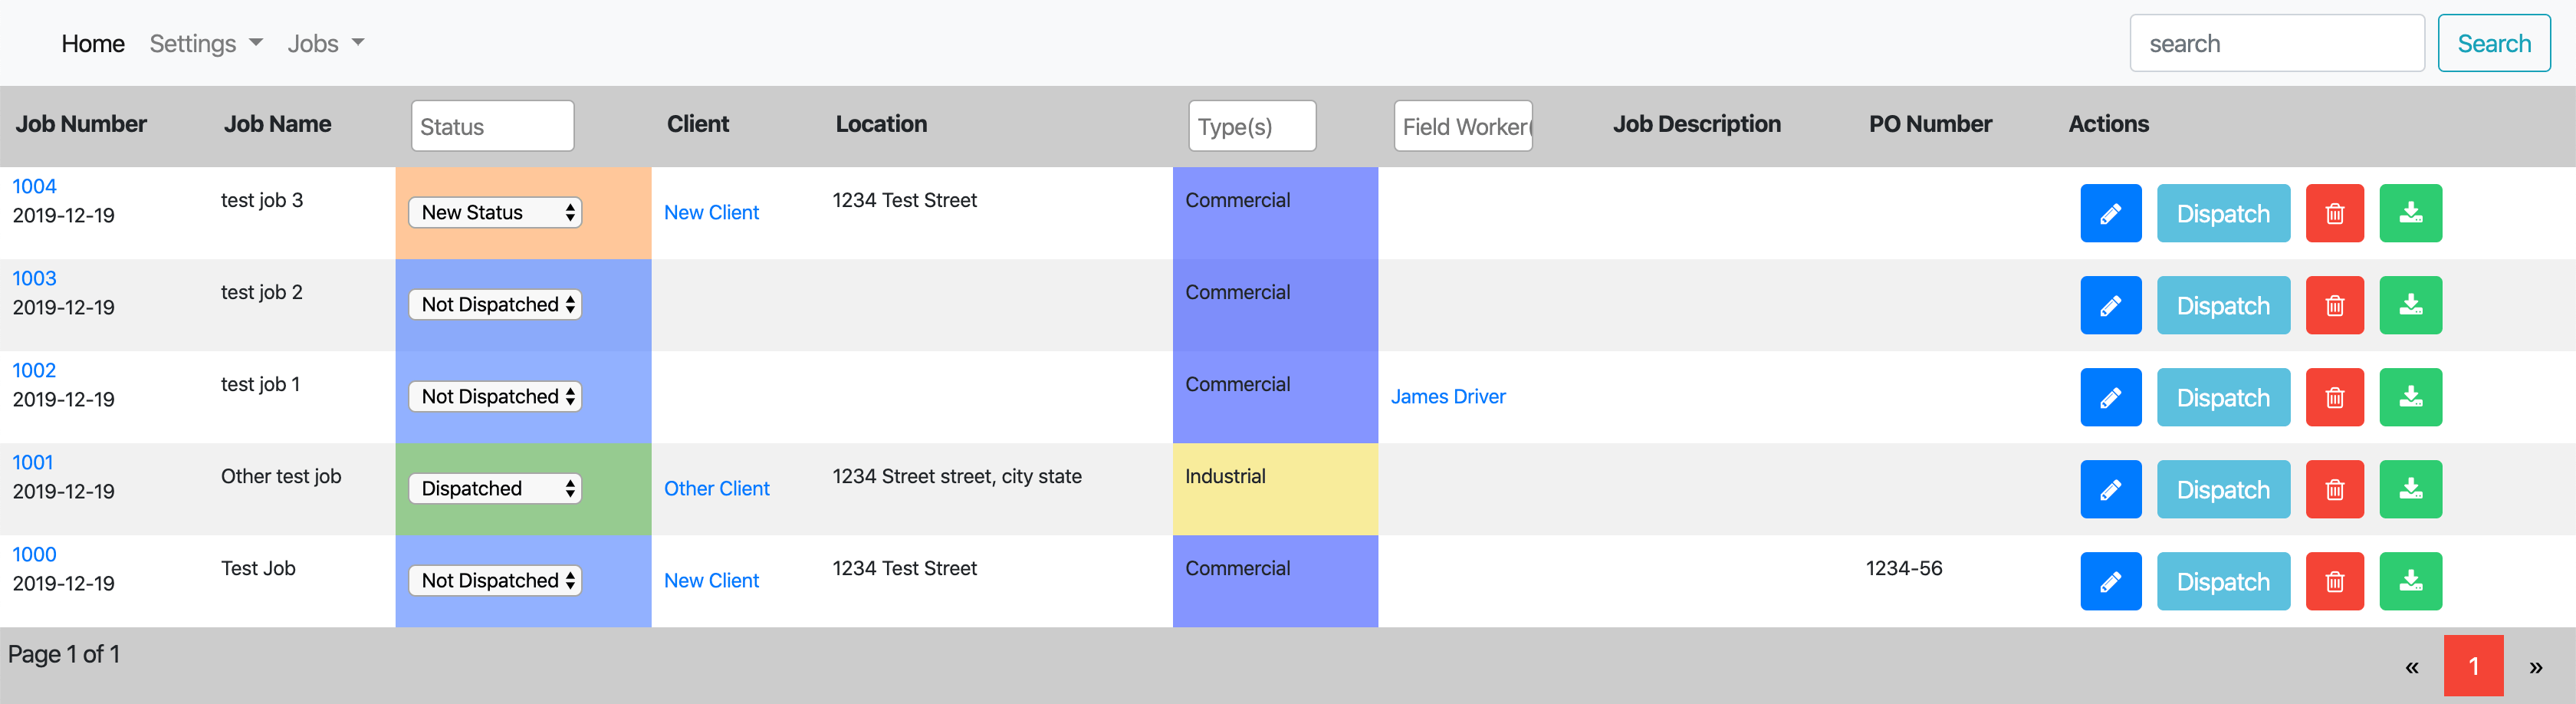 job sheet example